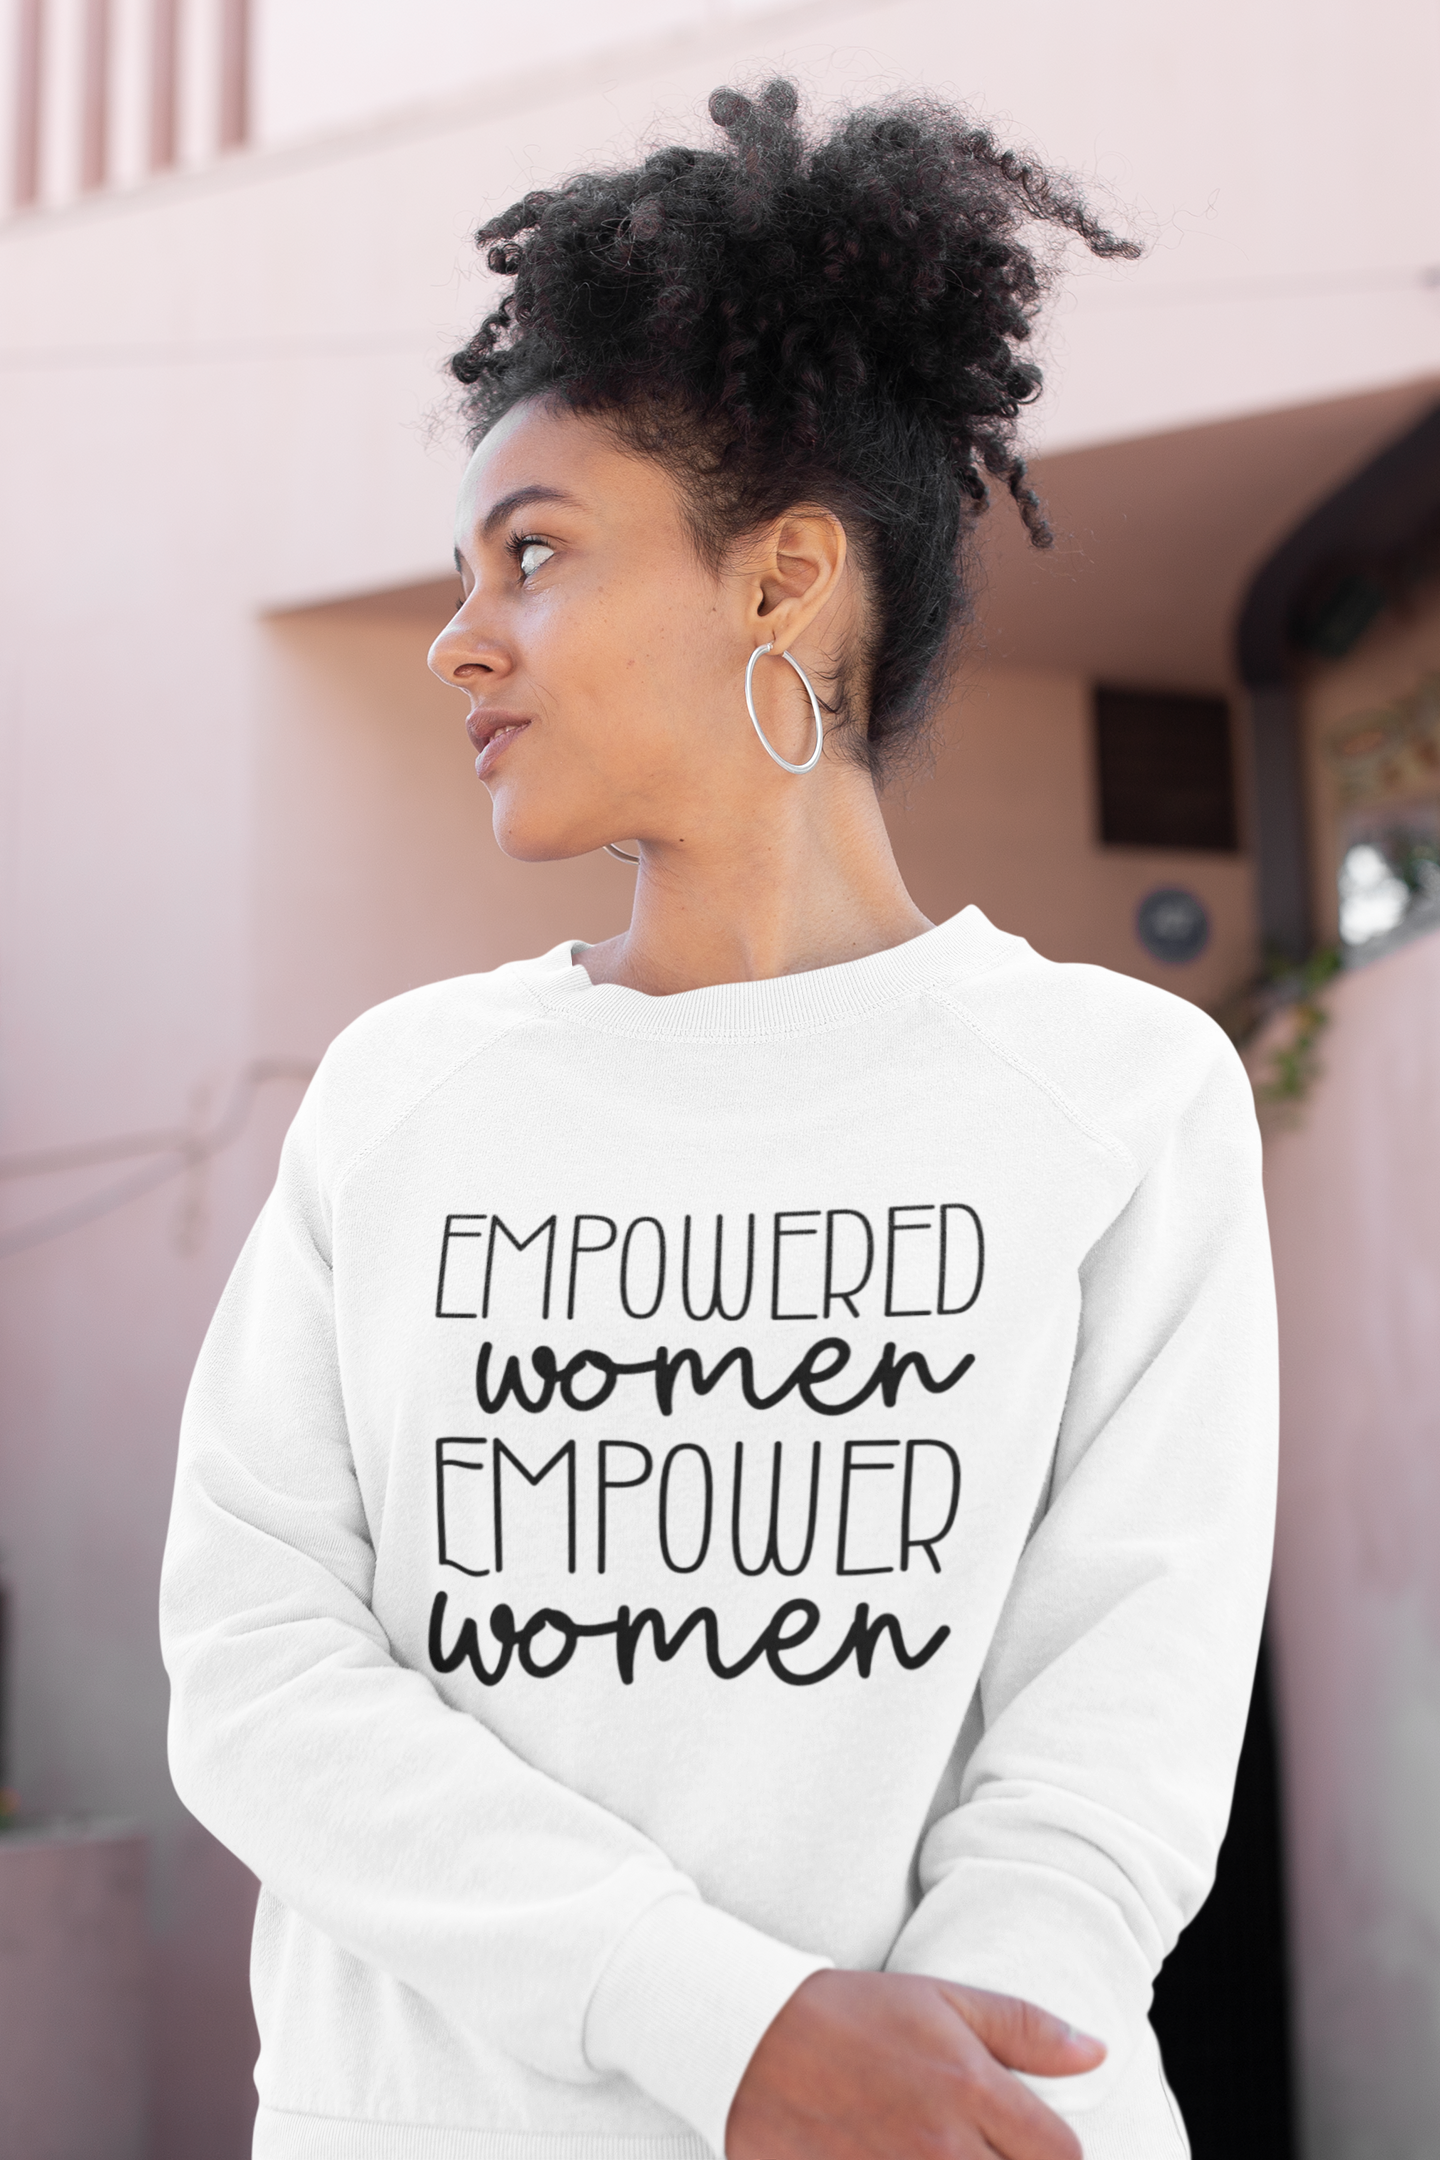 Empowered Women, Empower Women - Screen Print Transfers